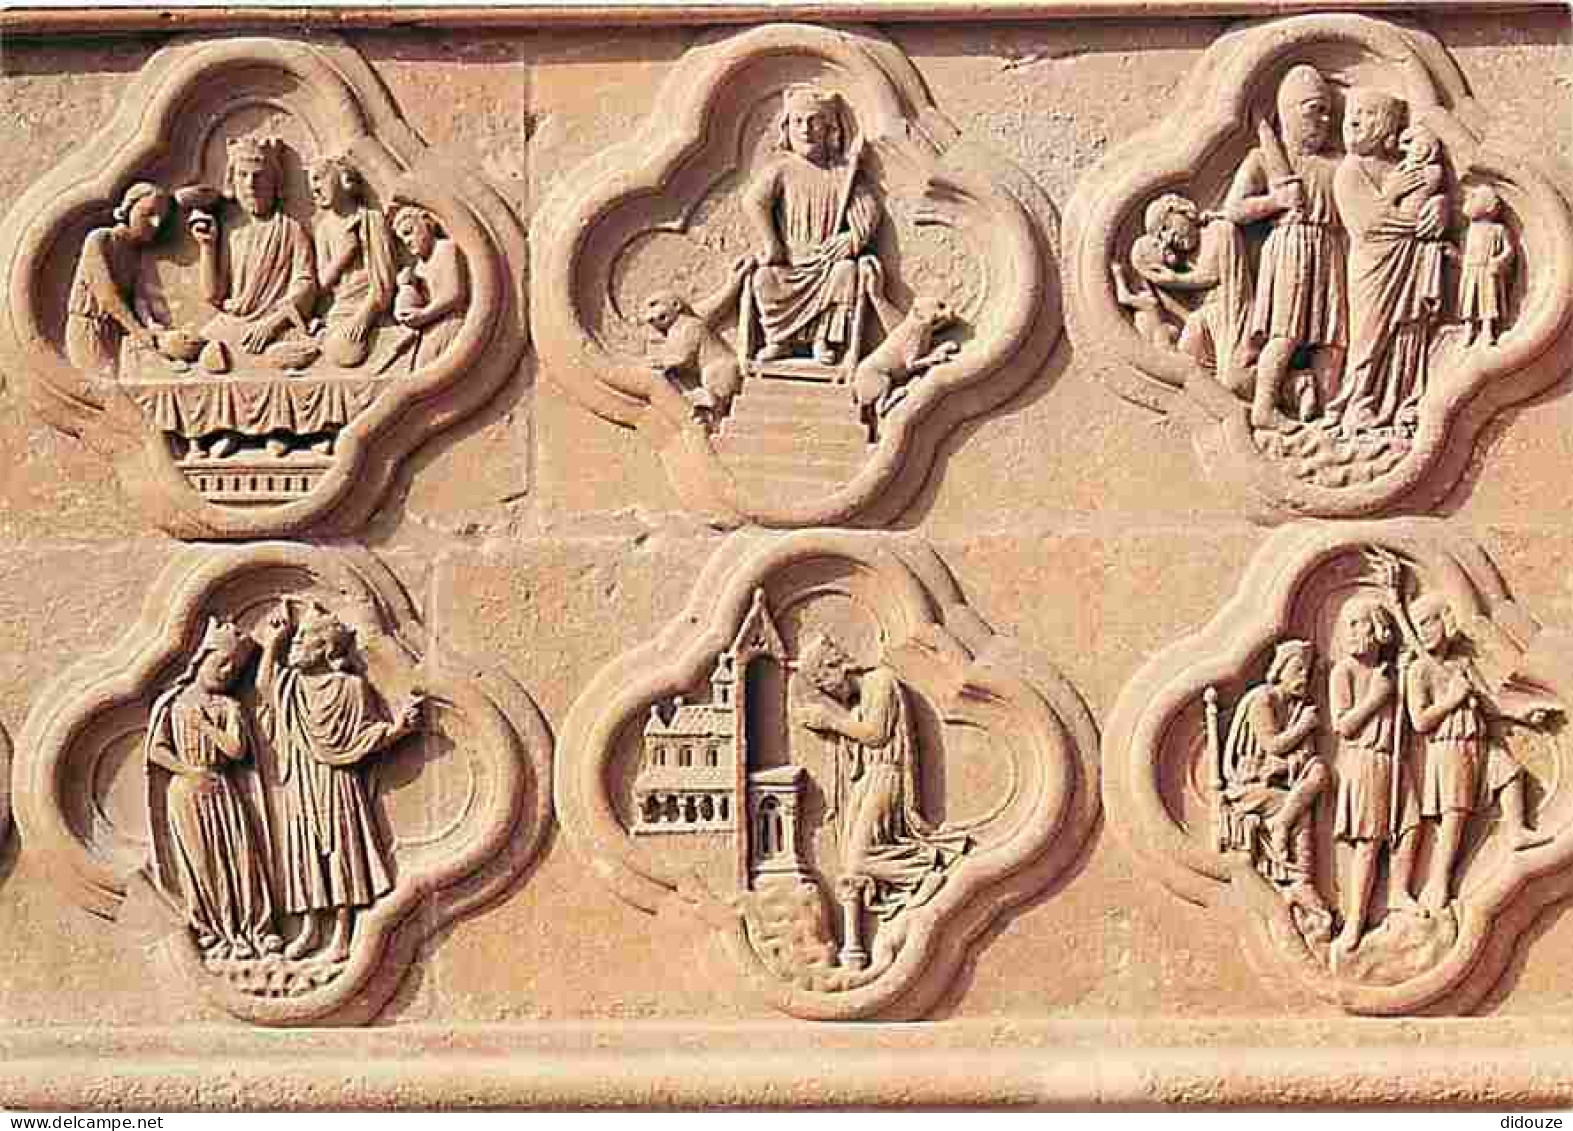 80 - Amiens - La Cathédrale Notre Dame - Façade Occidentale Portail Sud Dit De La Mère Dieu - Histoire Du Roi Hérode - D - Amiens